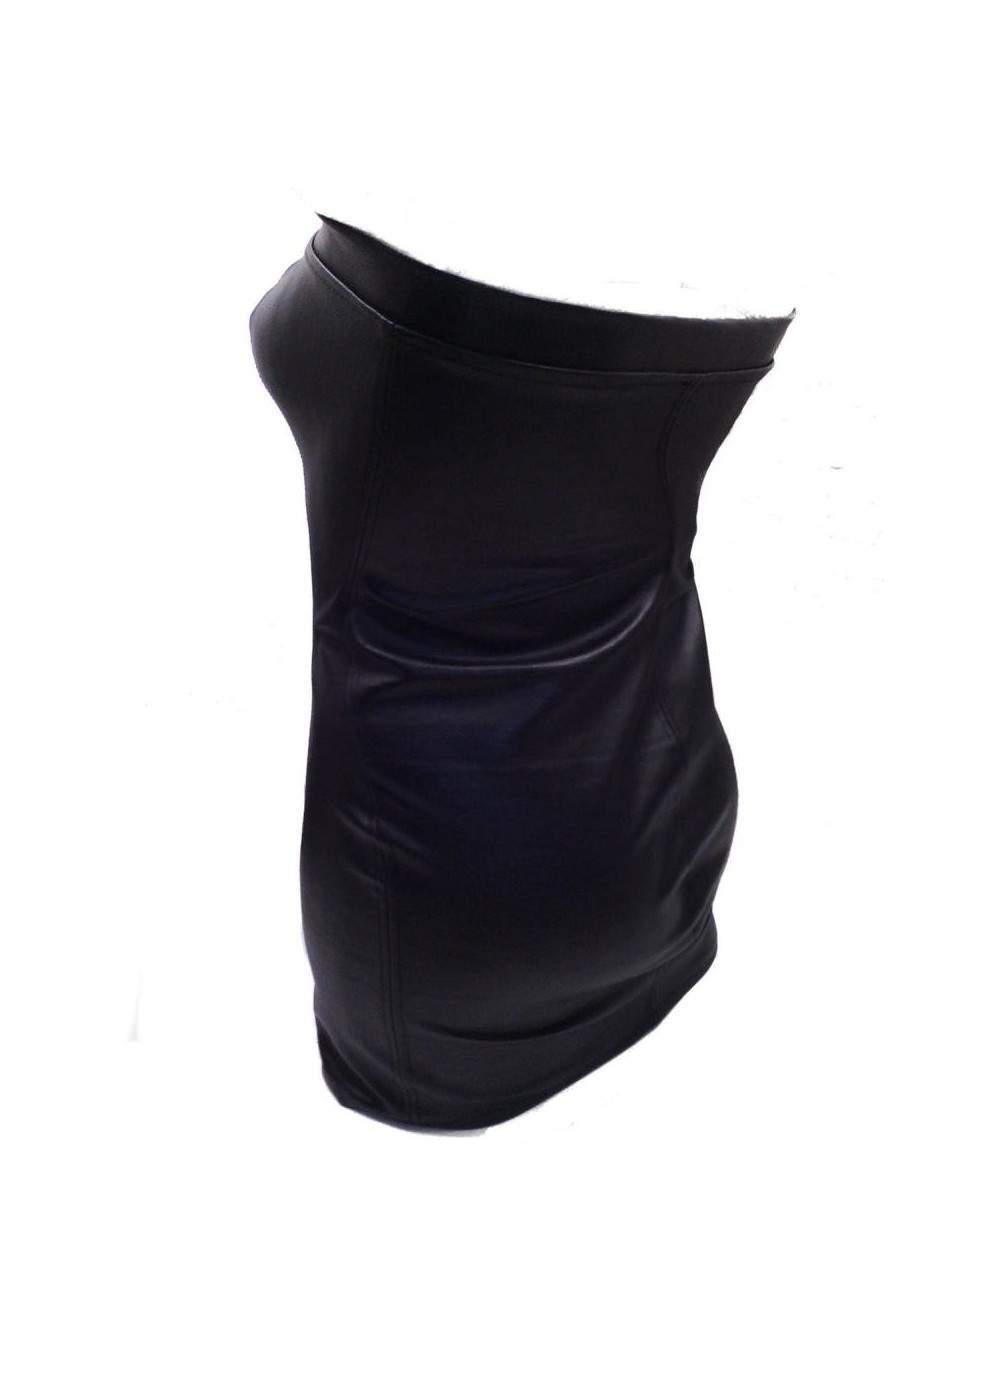 Vestido de cuero negro de diseño talla L - XXL (44 - 52) - 